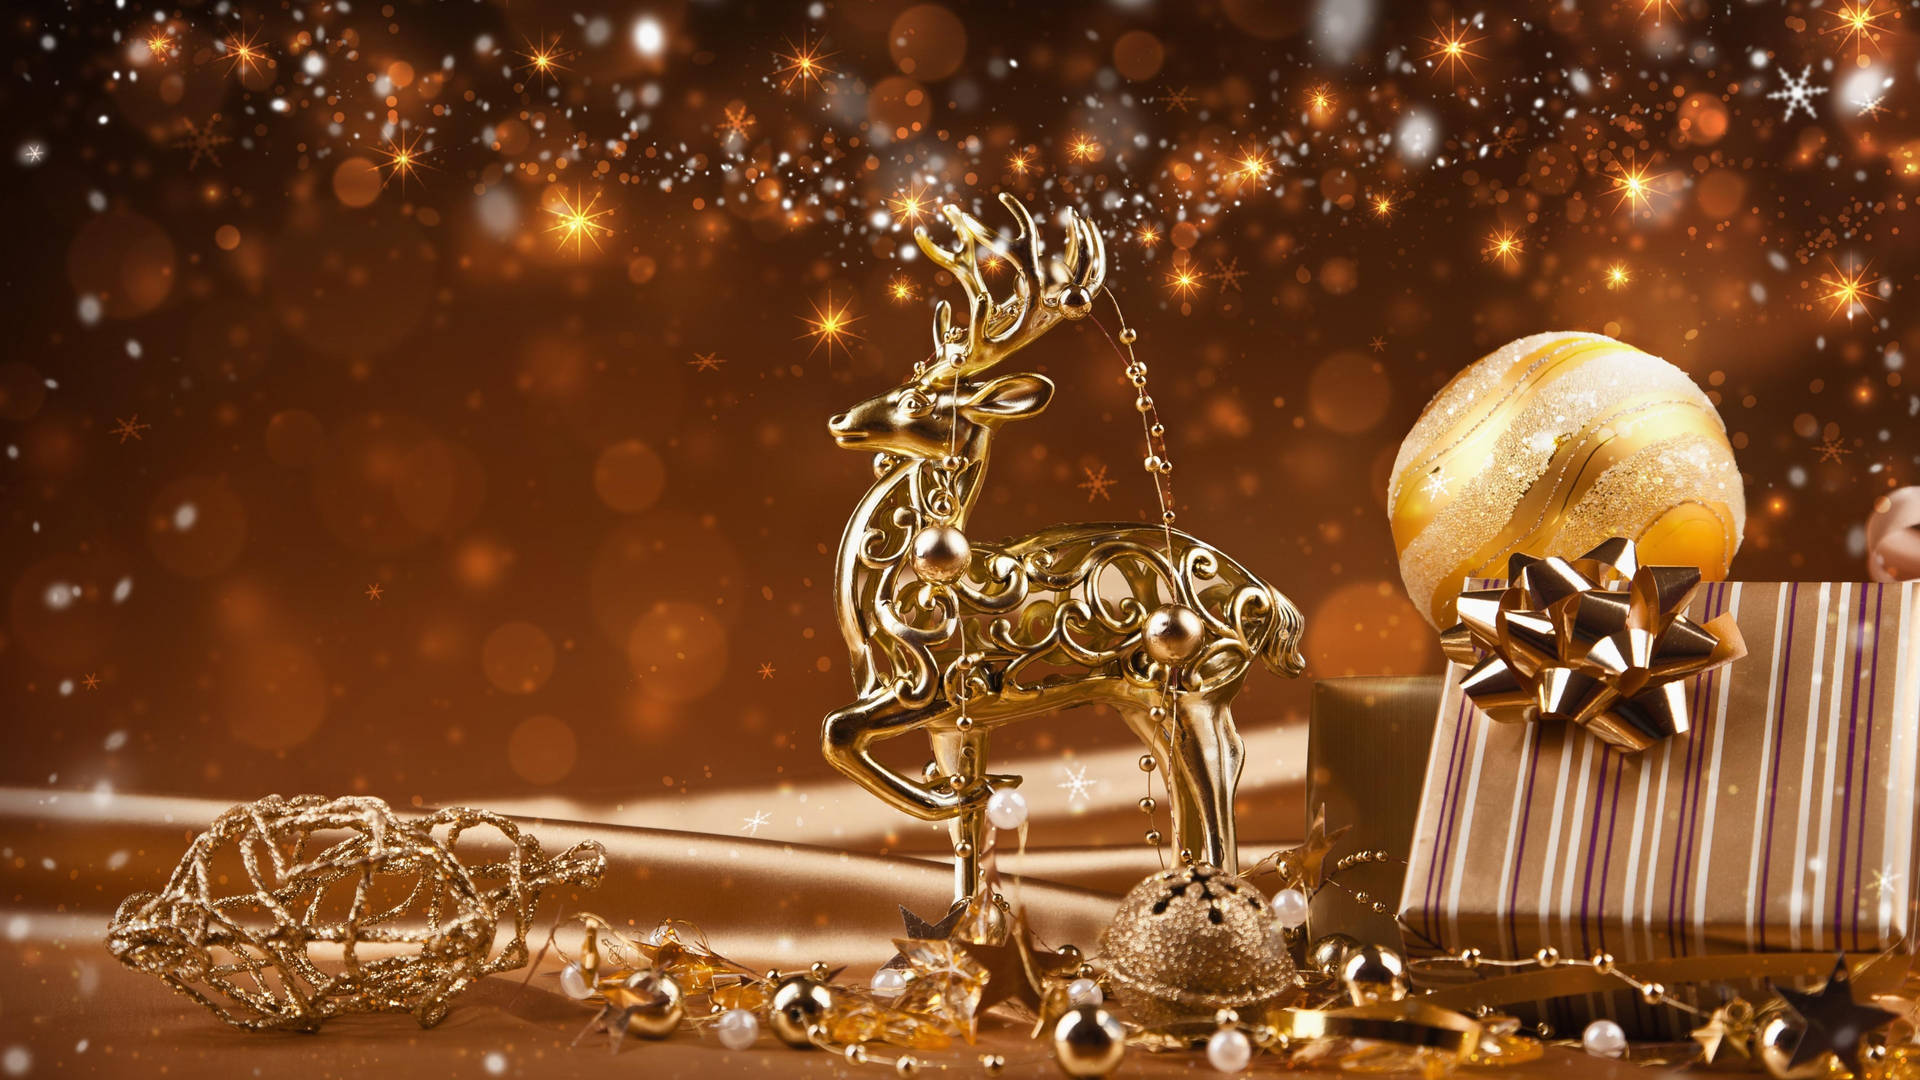 Golden Reindeer Christmas Aesthetic Wallpaper